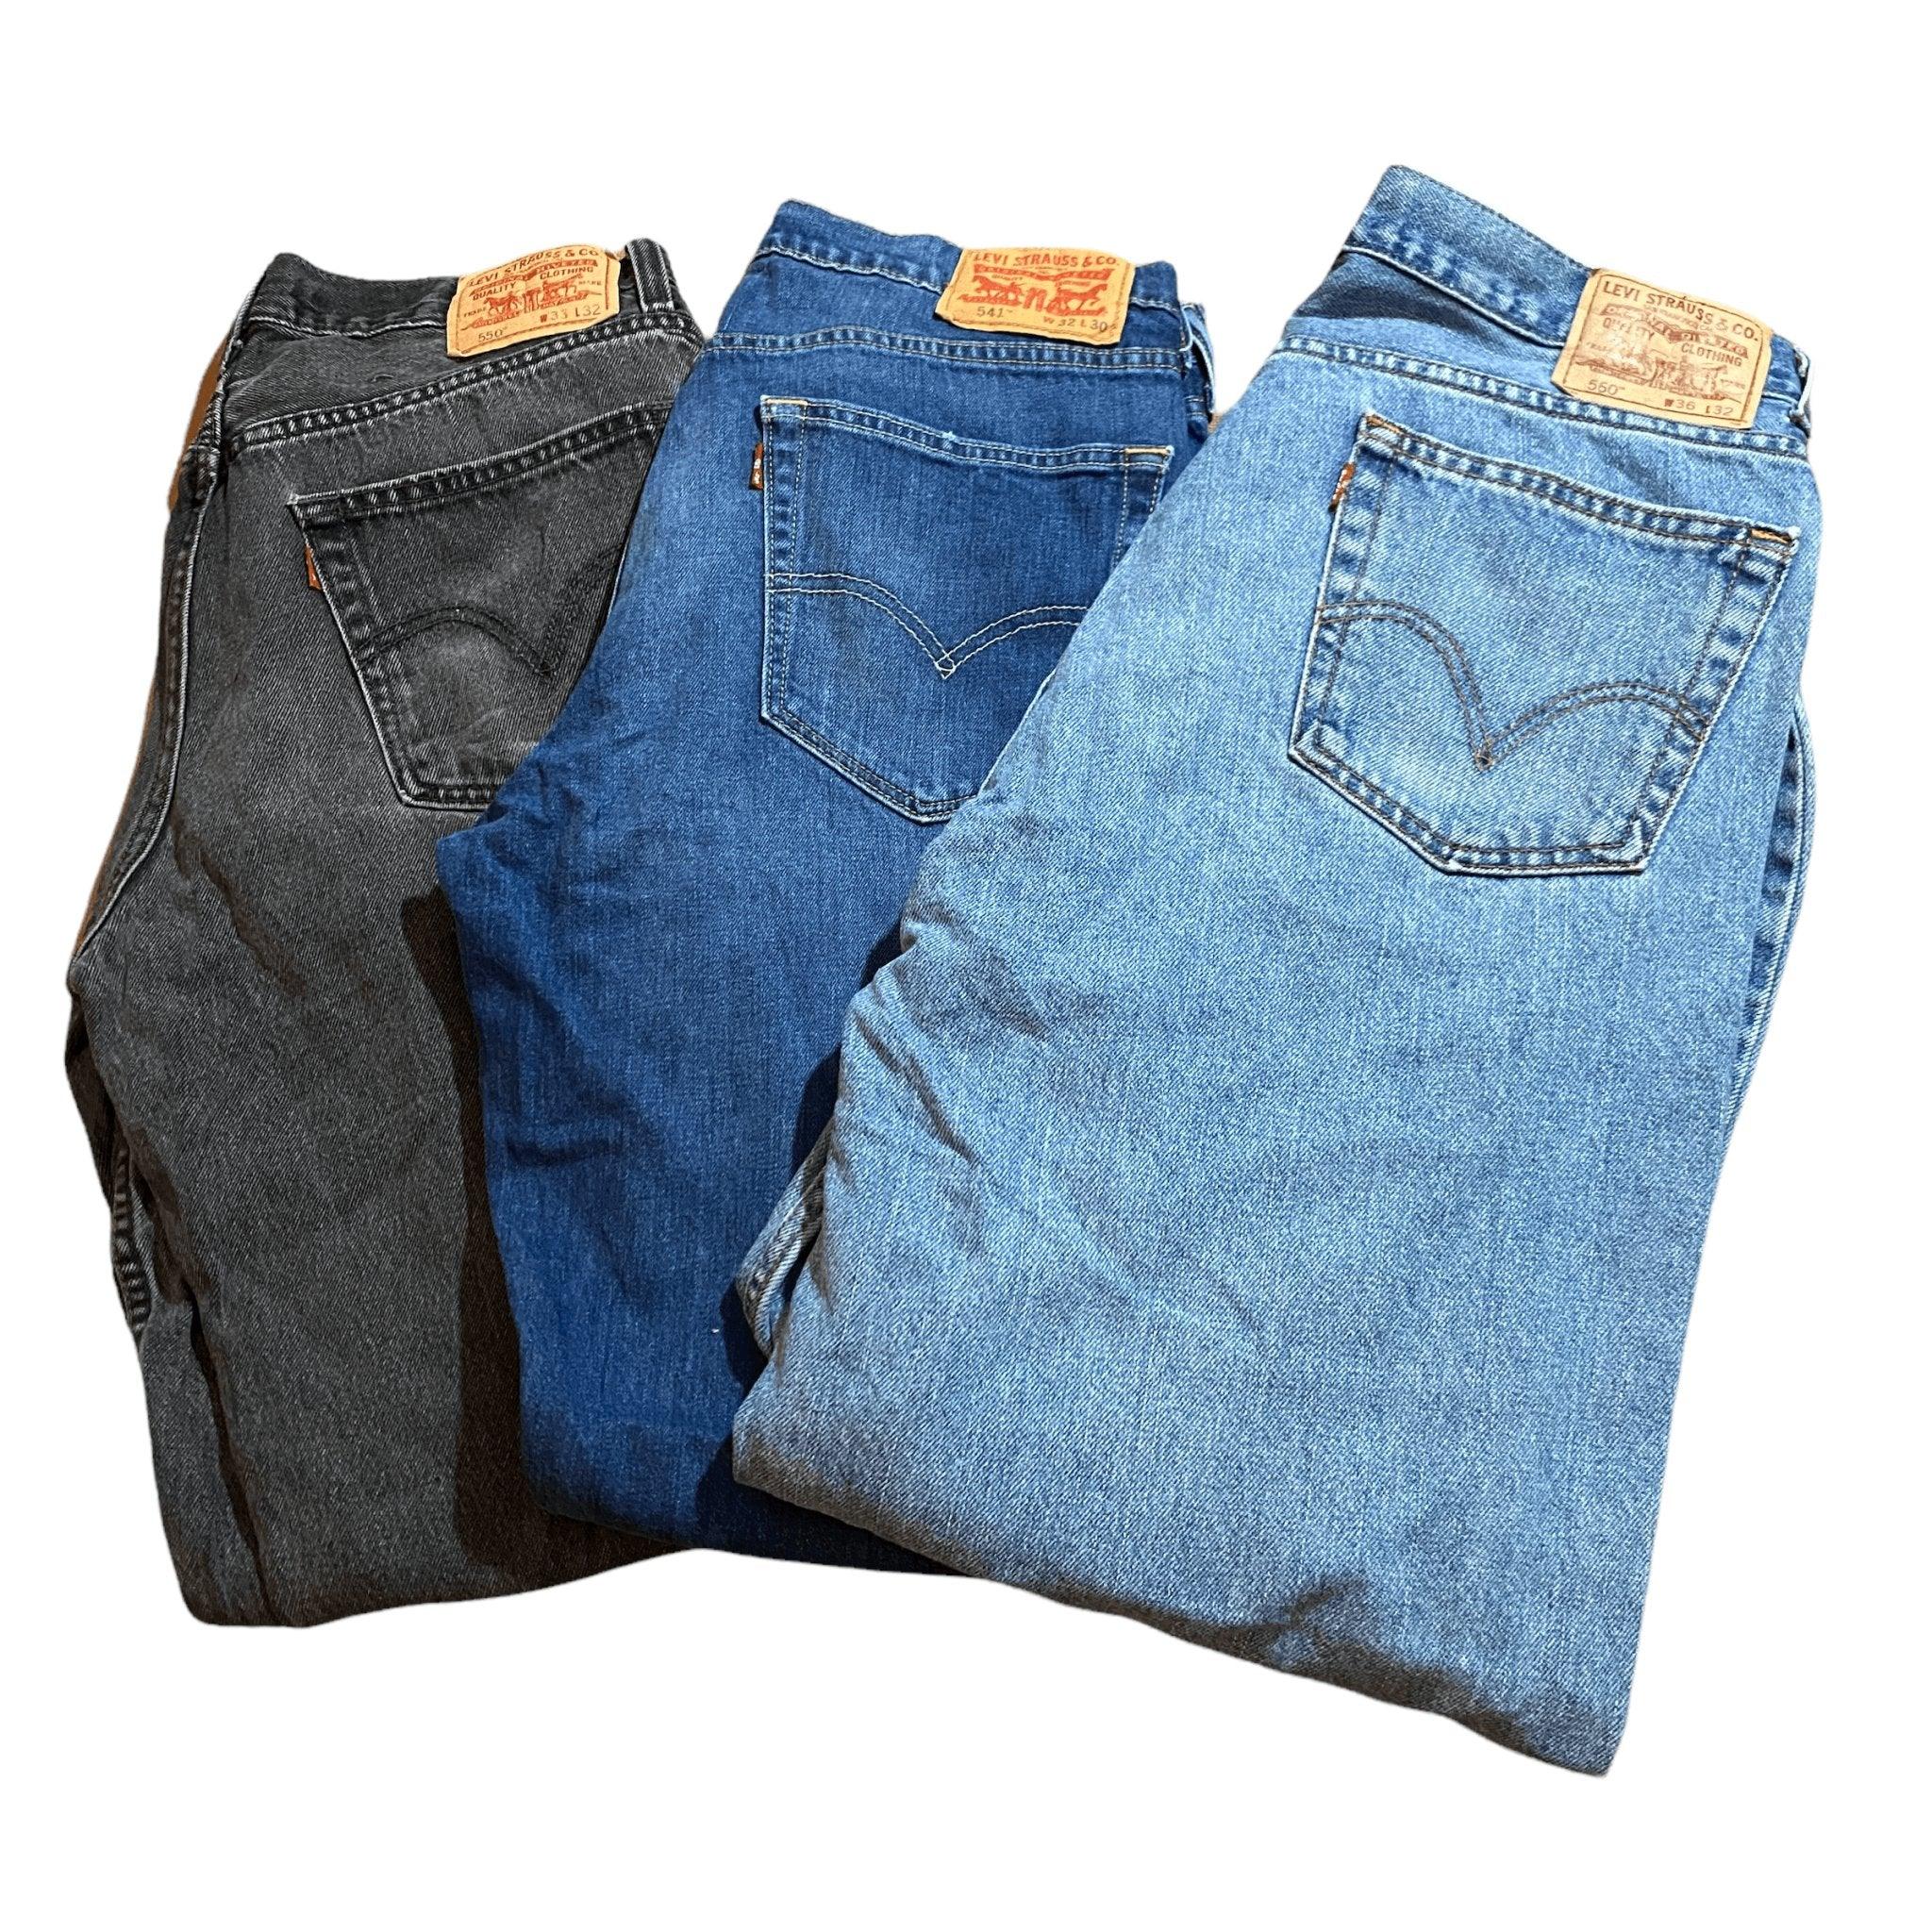 Wholesale Levis Jeans -  Cotton Only